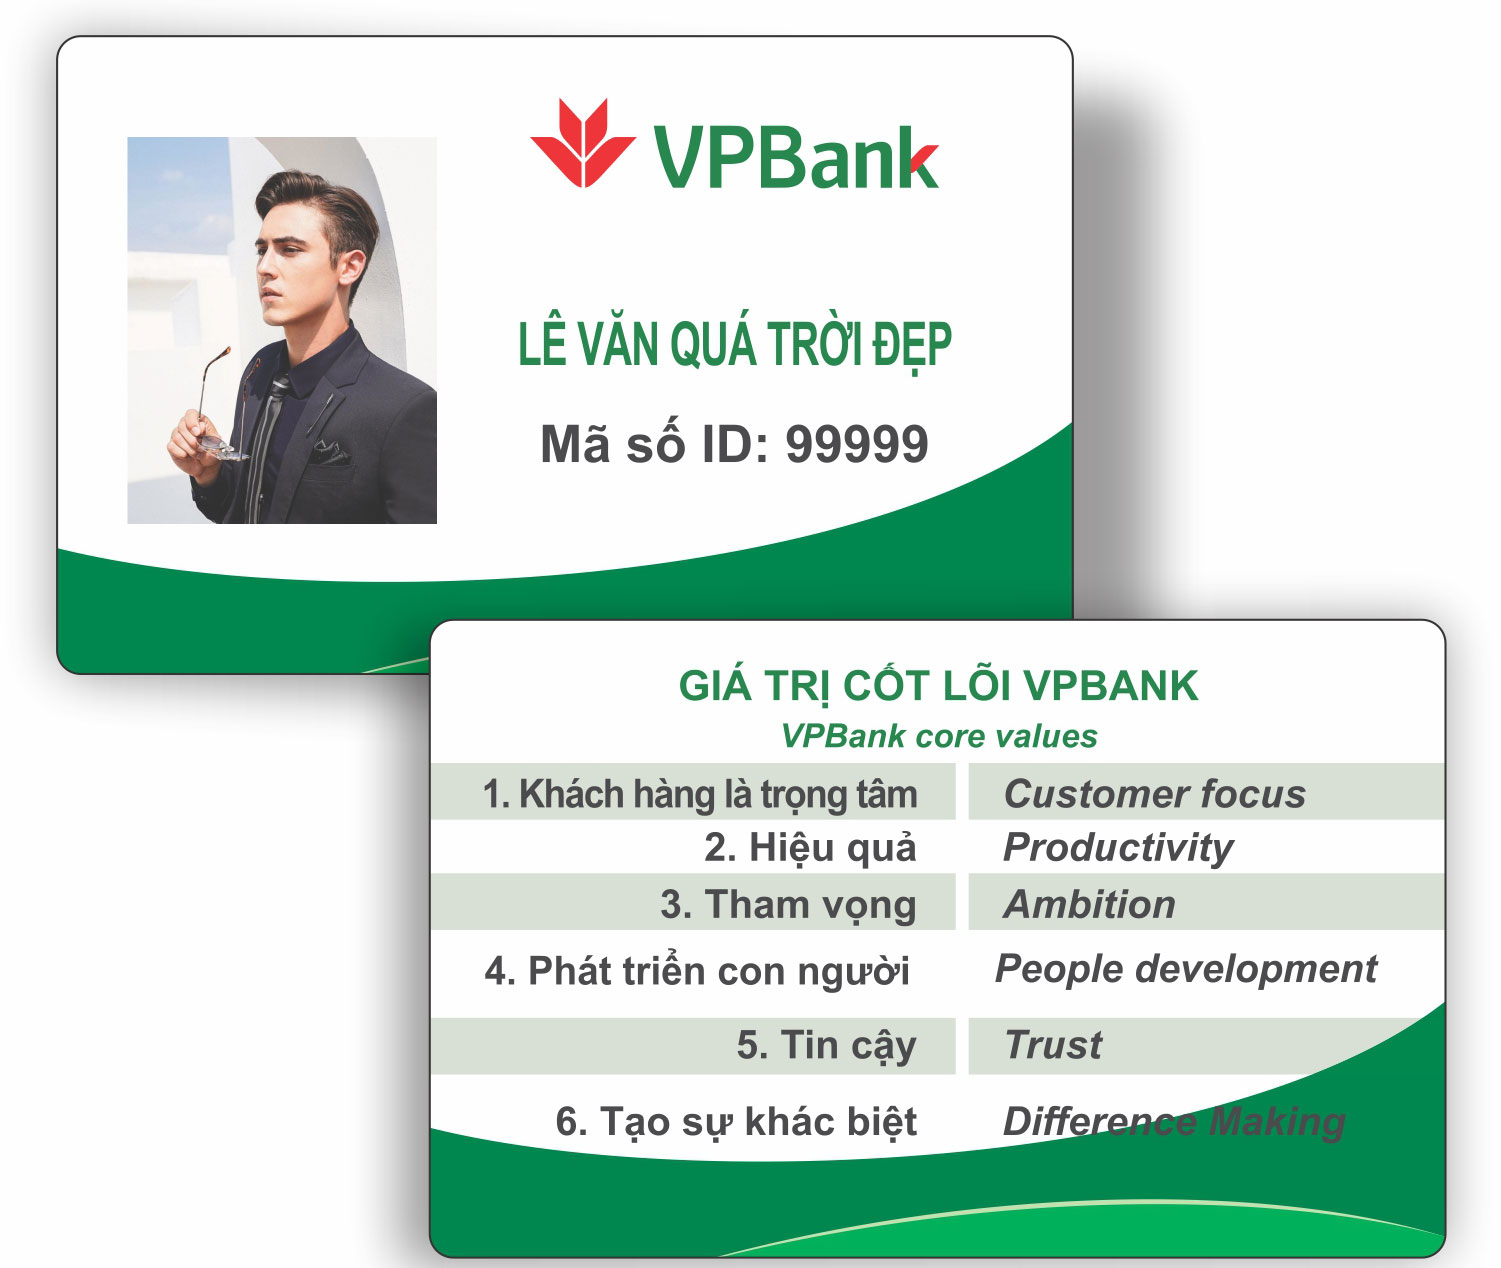 Thẻ nhân viên ngân hàng VPBank giá rẻ: Đến với chúng tôi, bạn sẽ có cơ hội sở hữu thẻ nhân viên ngân hàng VPBank giá rẻ nhất trên thị trường. Với nhiều gói ưu đãi hấp dẫn, hãy đừng bỏ lỡ cơ hội để tiết kiệm chi phí cho doanh nghiệp của bạn.